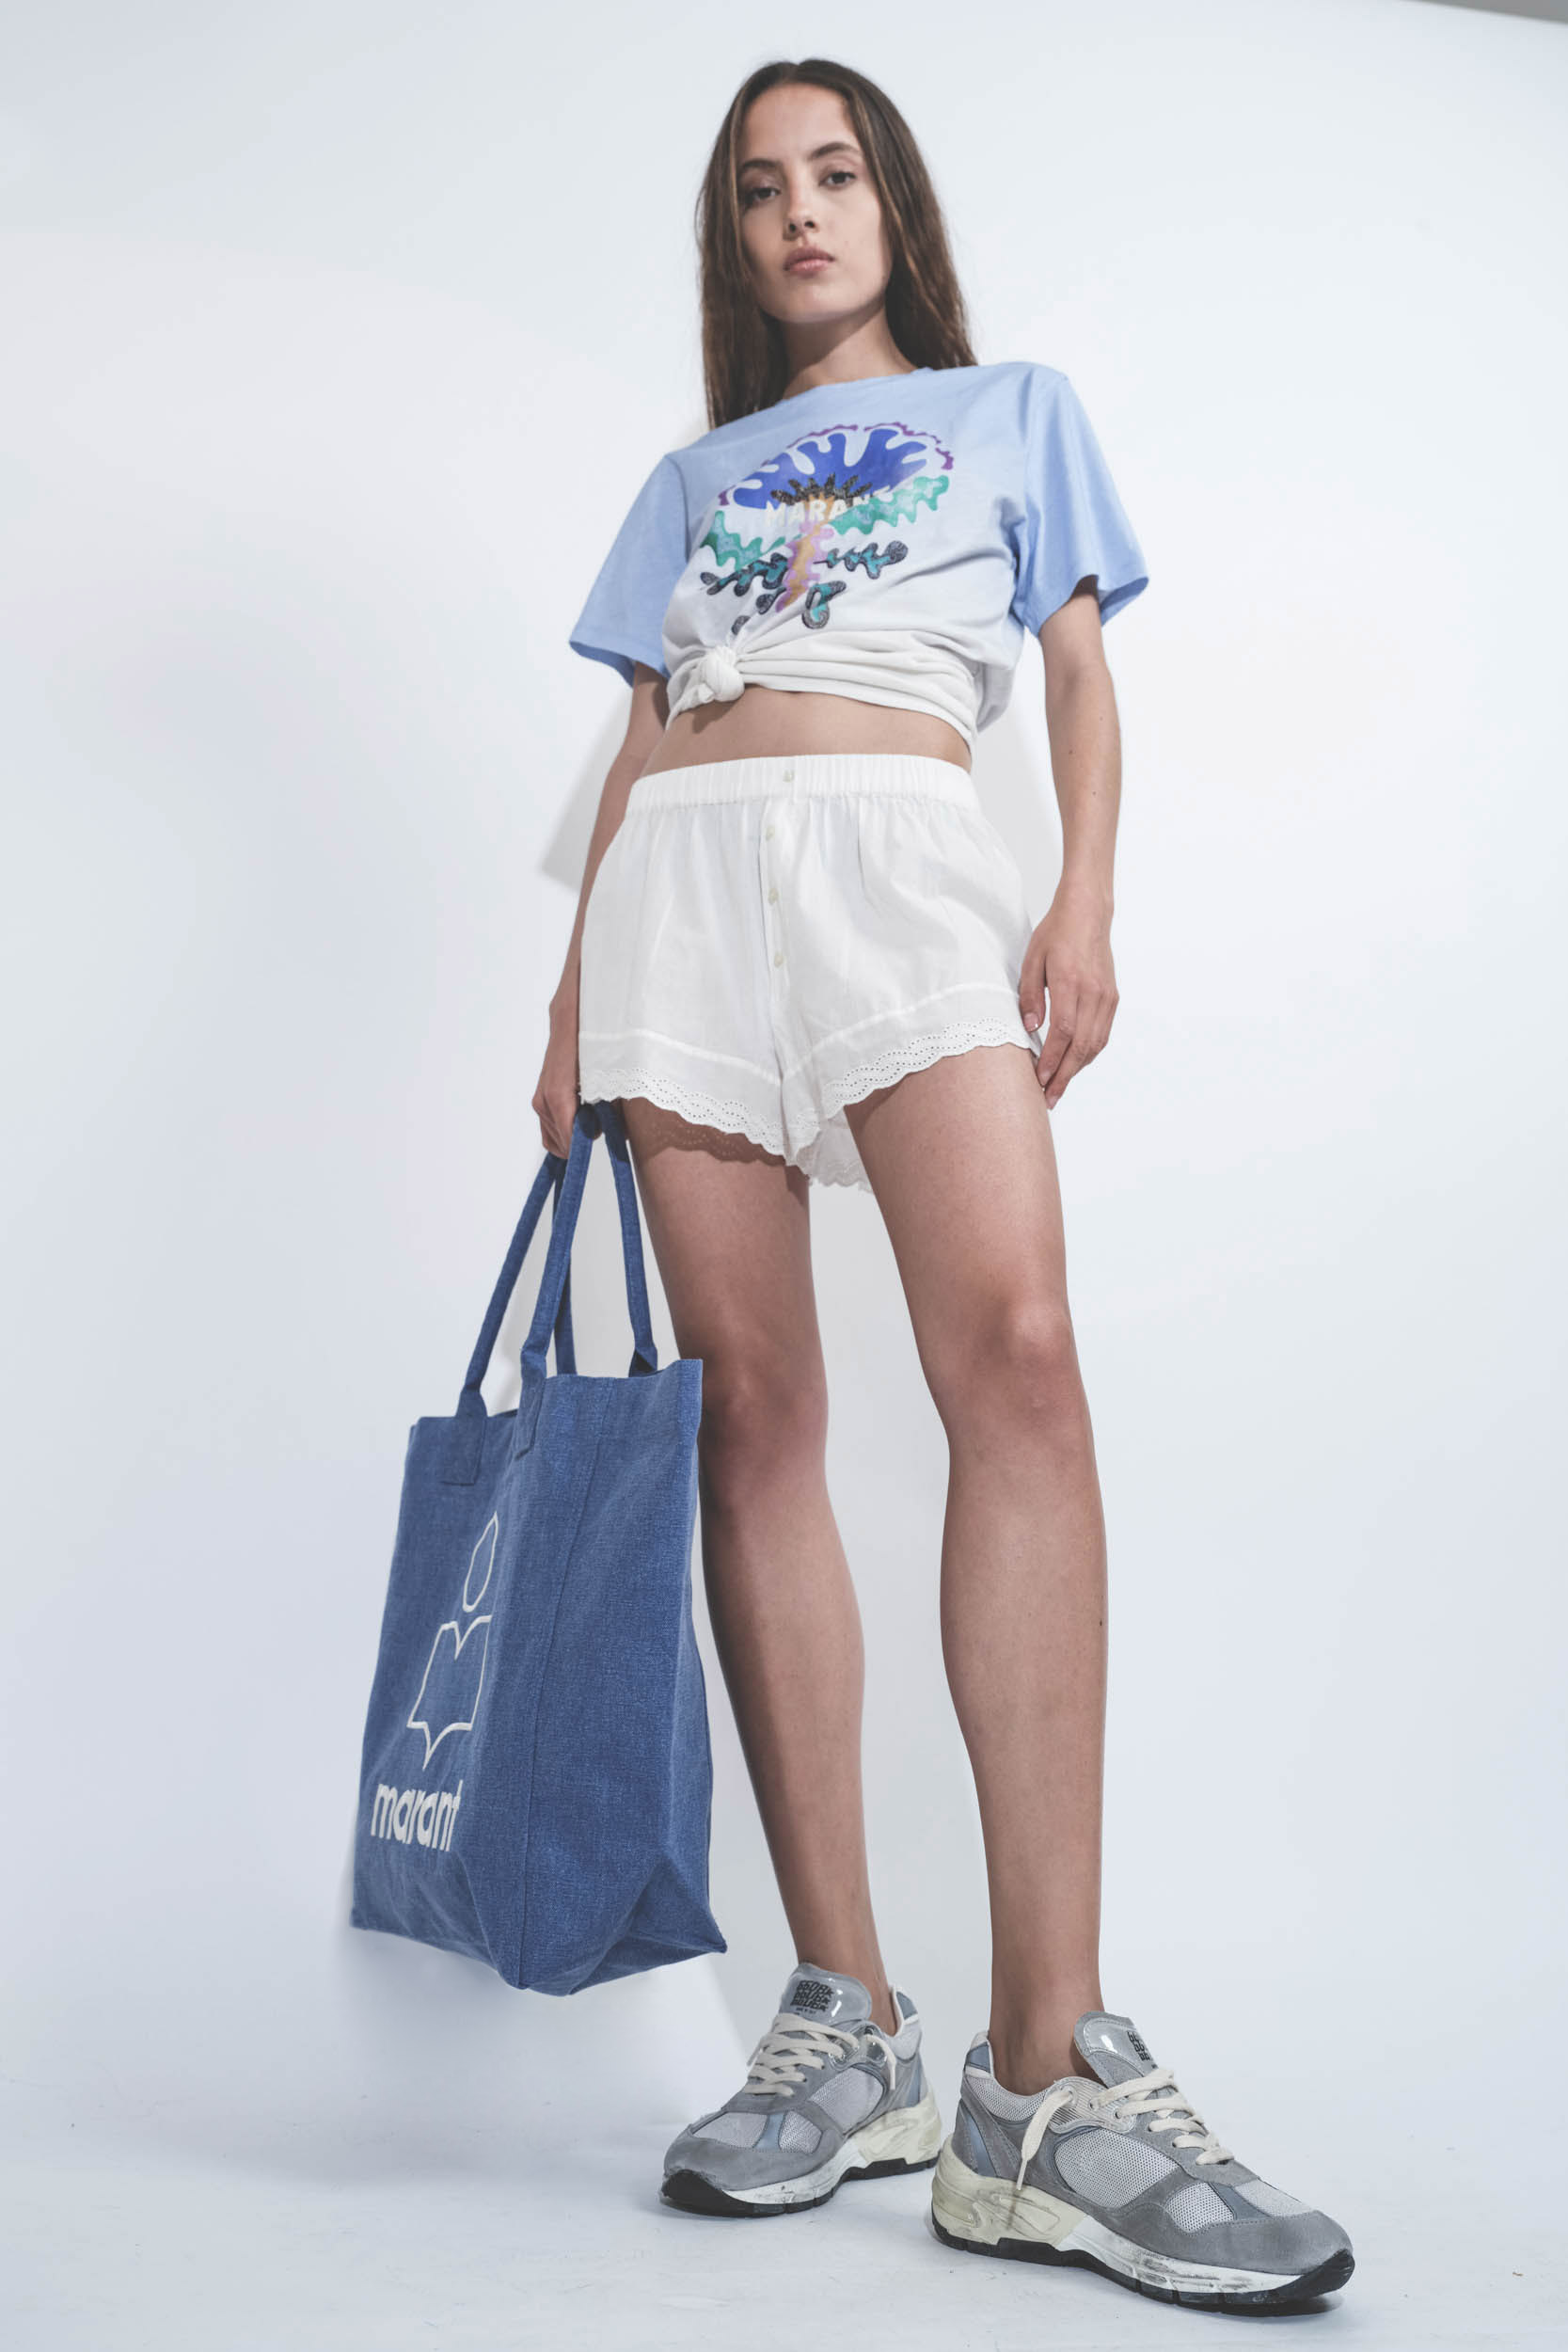 Tee-shirt droit manches courtes imprimé Marant bleu Zewel Isabel Marant Etoile. Porté avec un short lingerie.